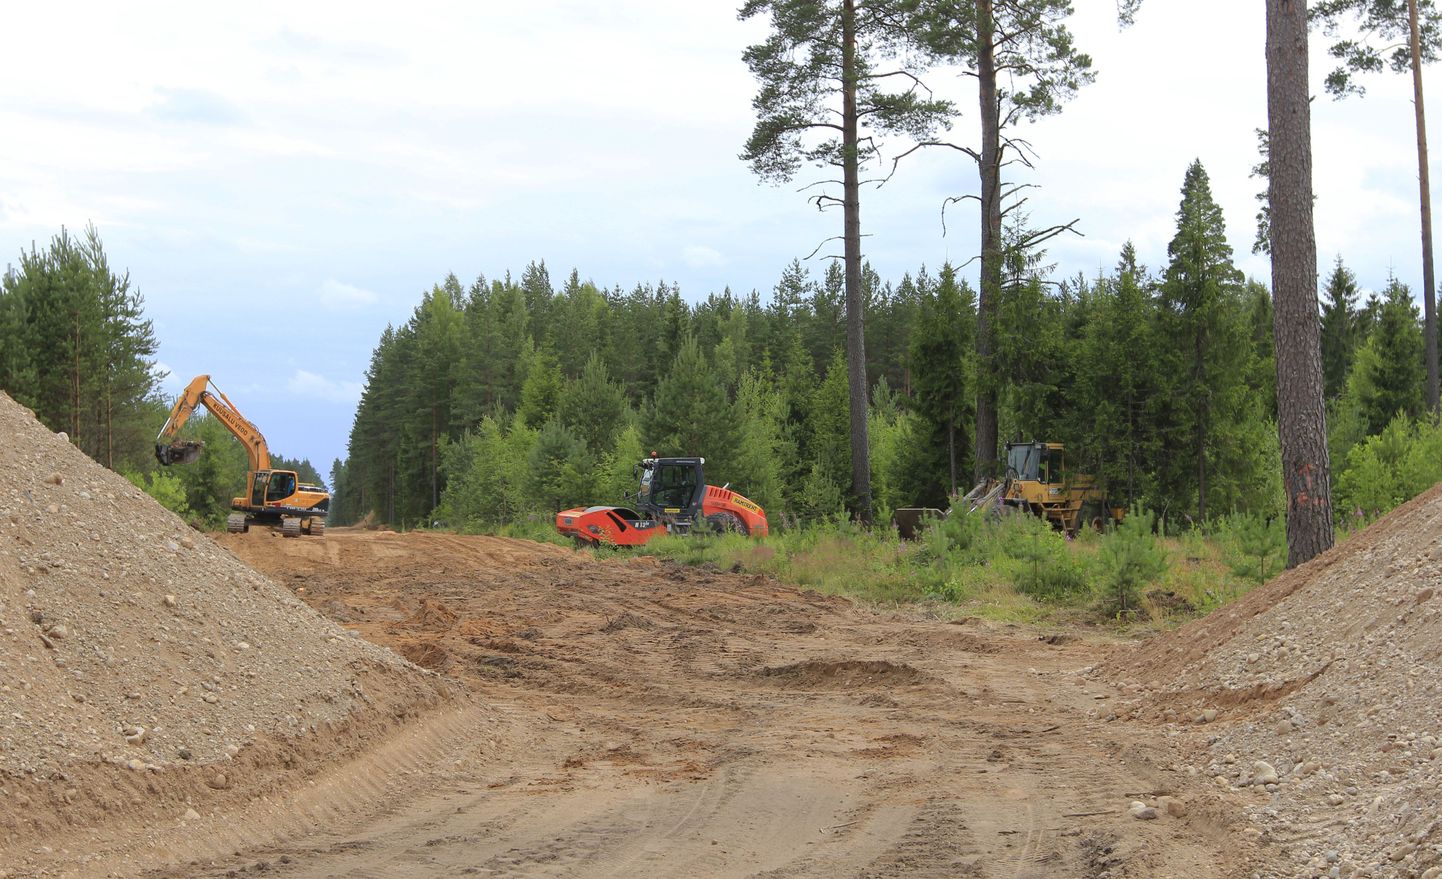 Tõlliste vald, 23.07.2015
Metsatee ehitus
Foto: Ülla Tamm/Valgamaalane